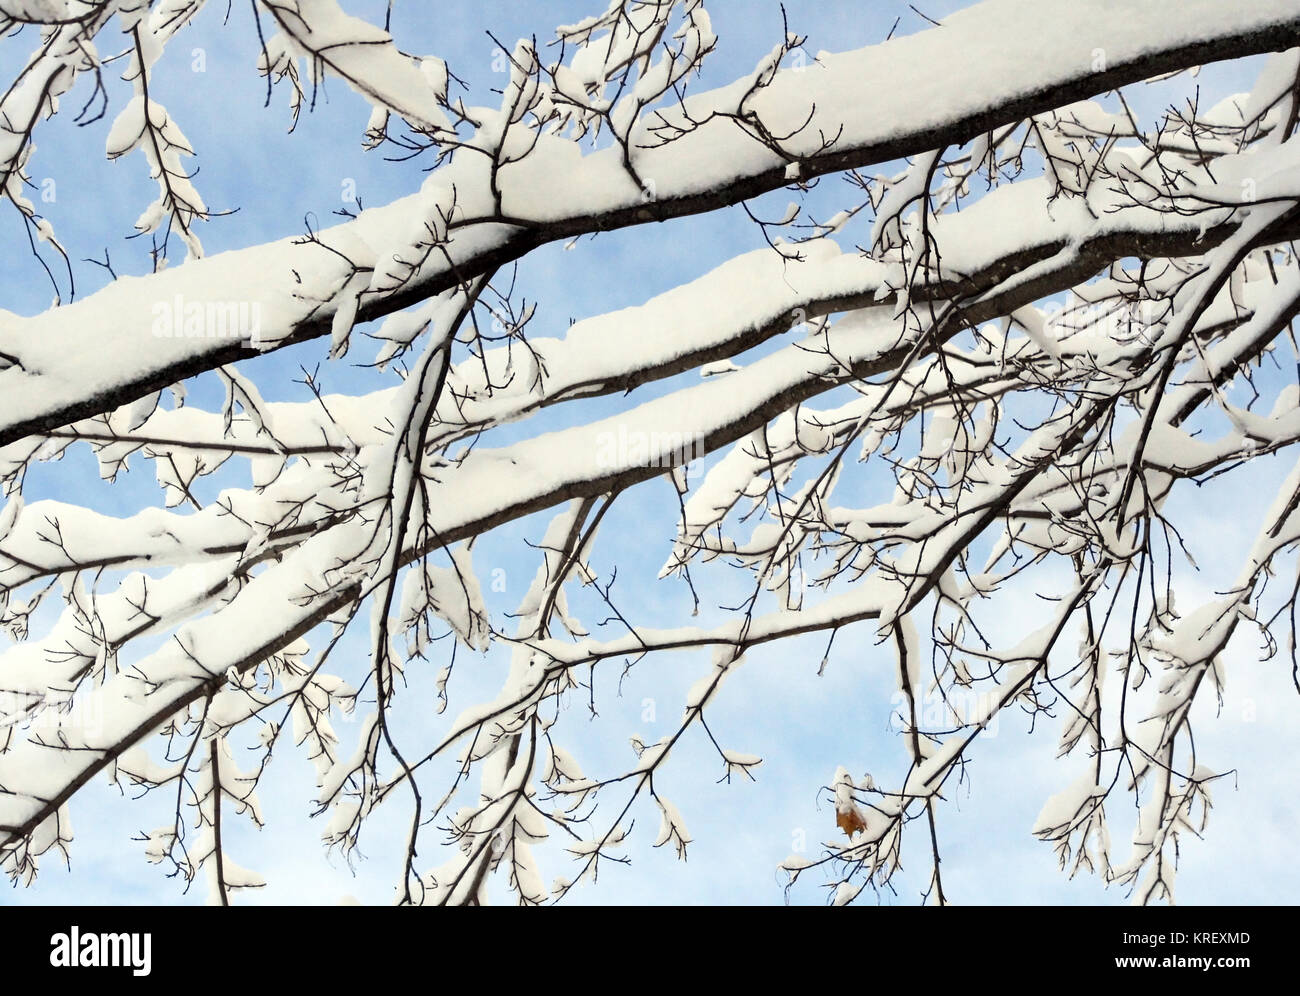 Fresco di neve caduti acquisiti su uno dei rami dell'albero contro un luminoso blu cielo invernale Foto Stock